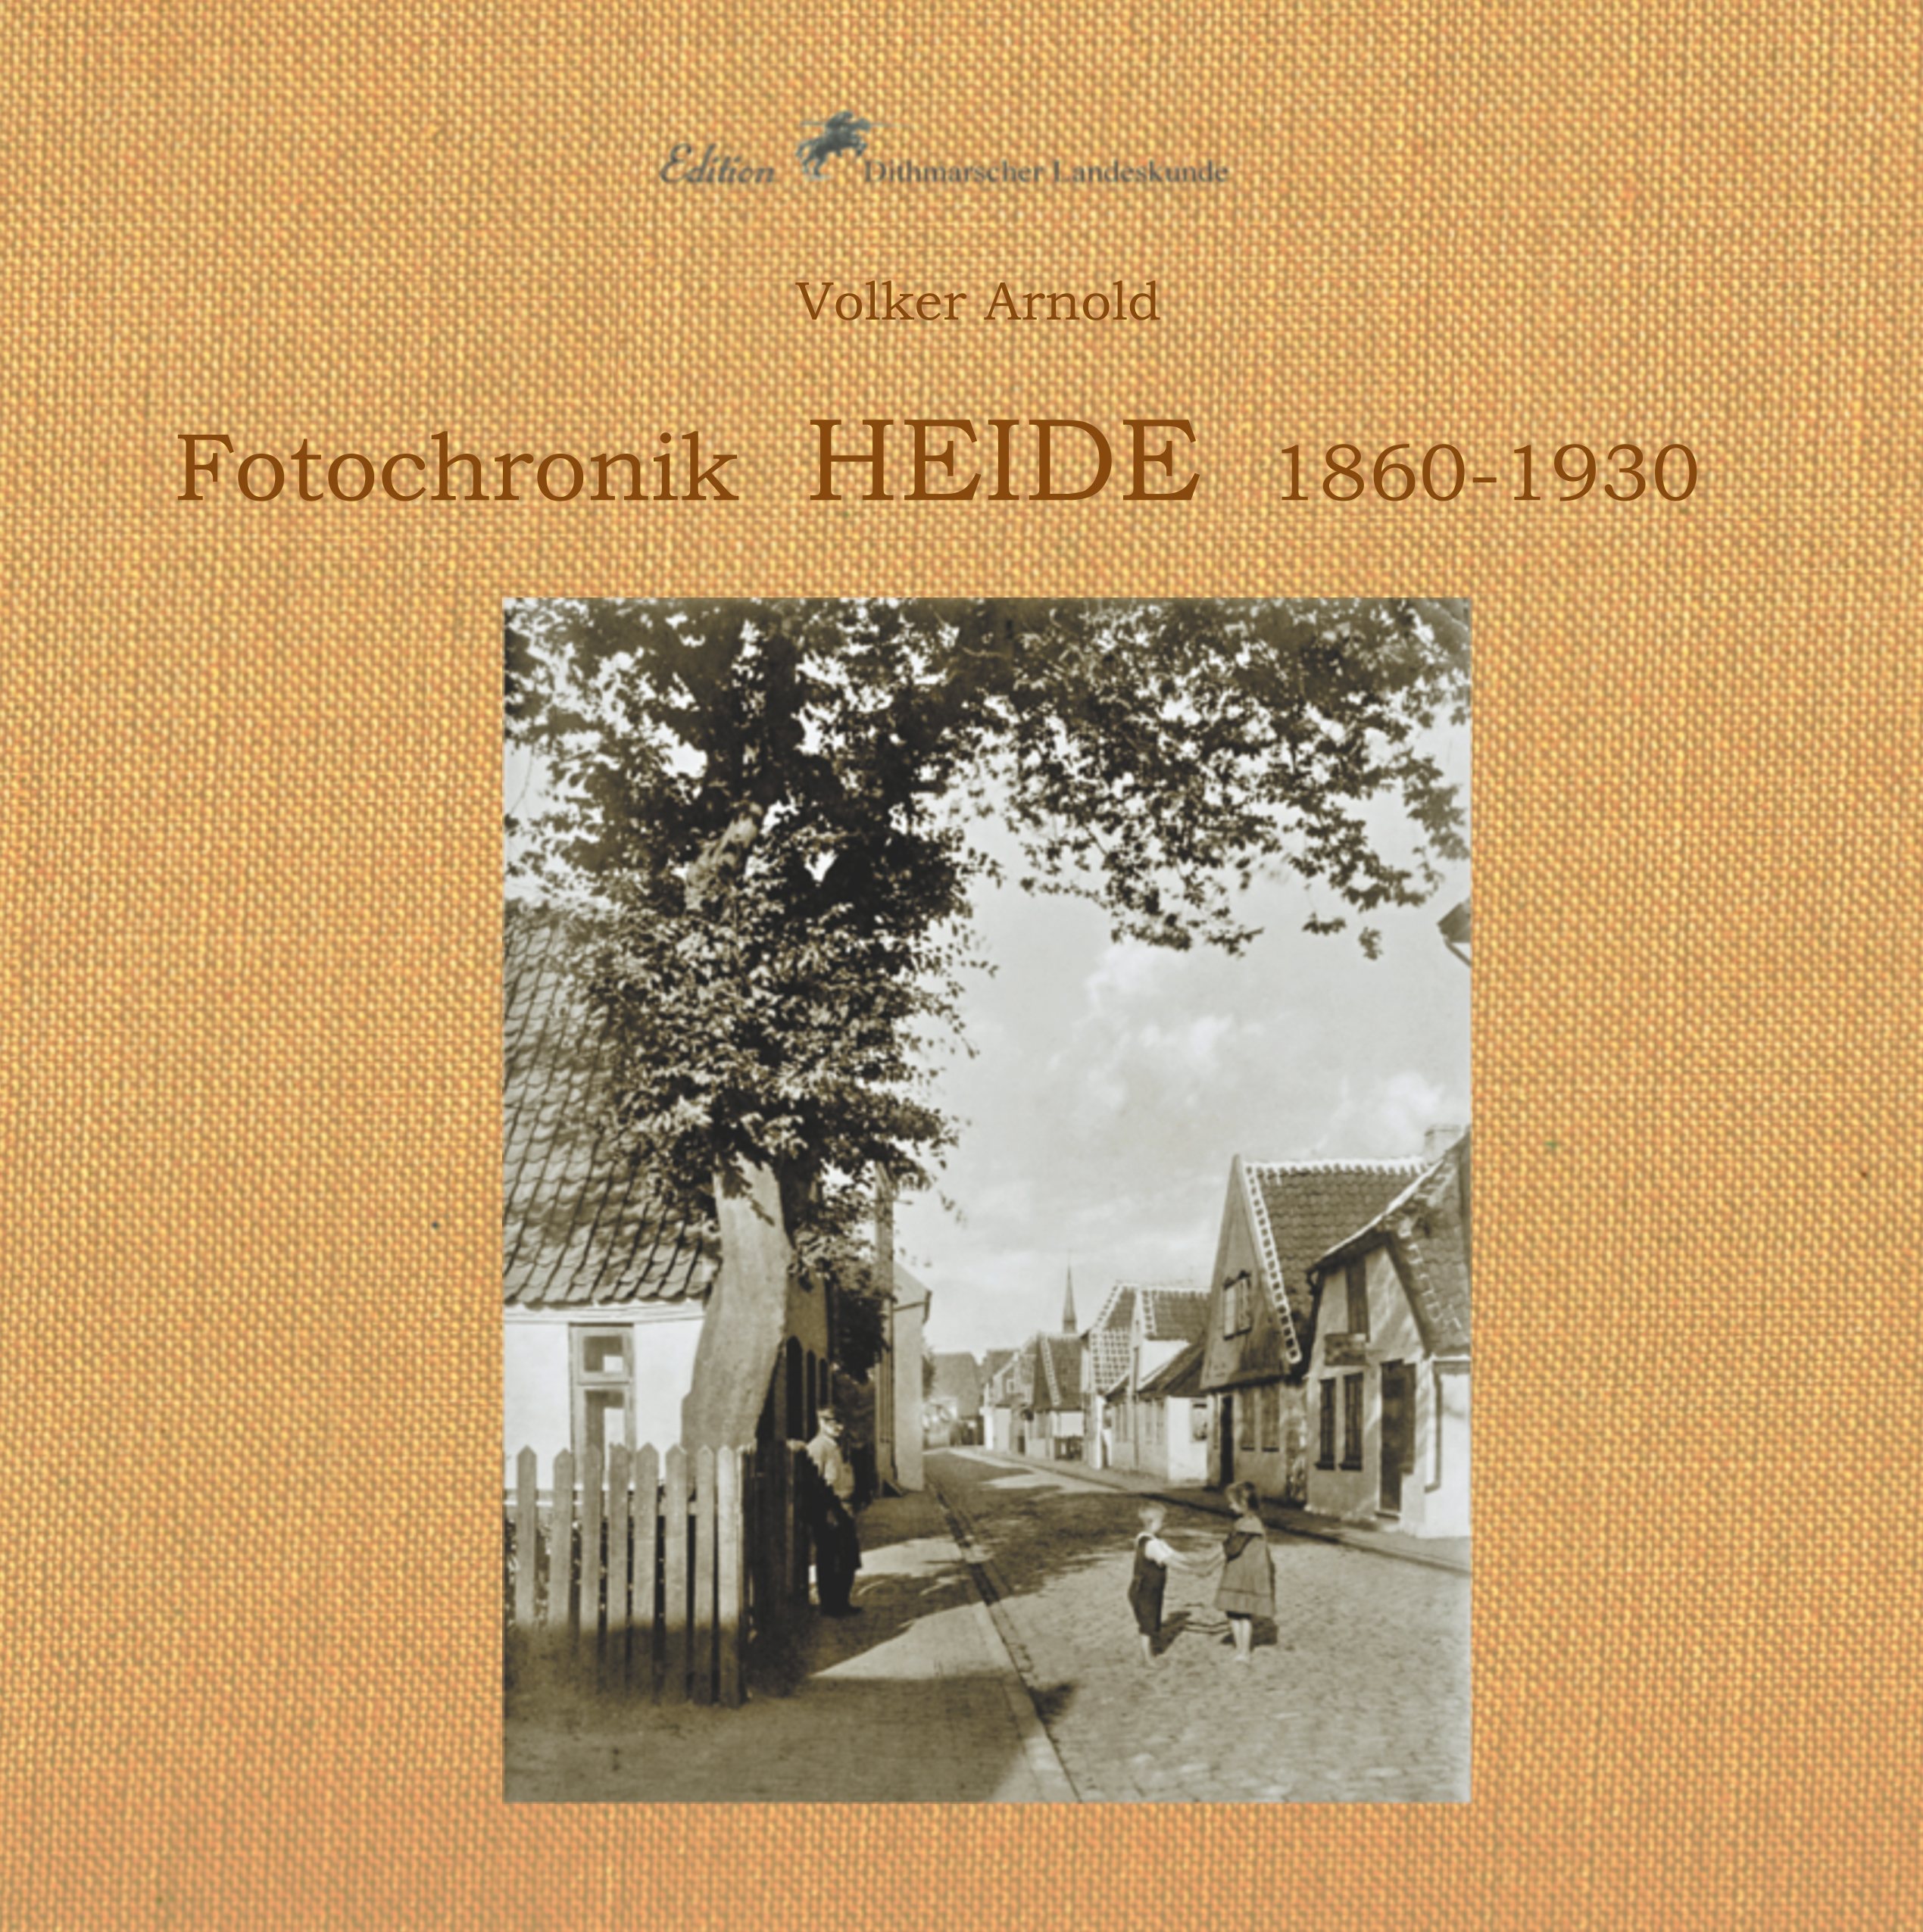 Fotochronik Heide Cover